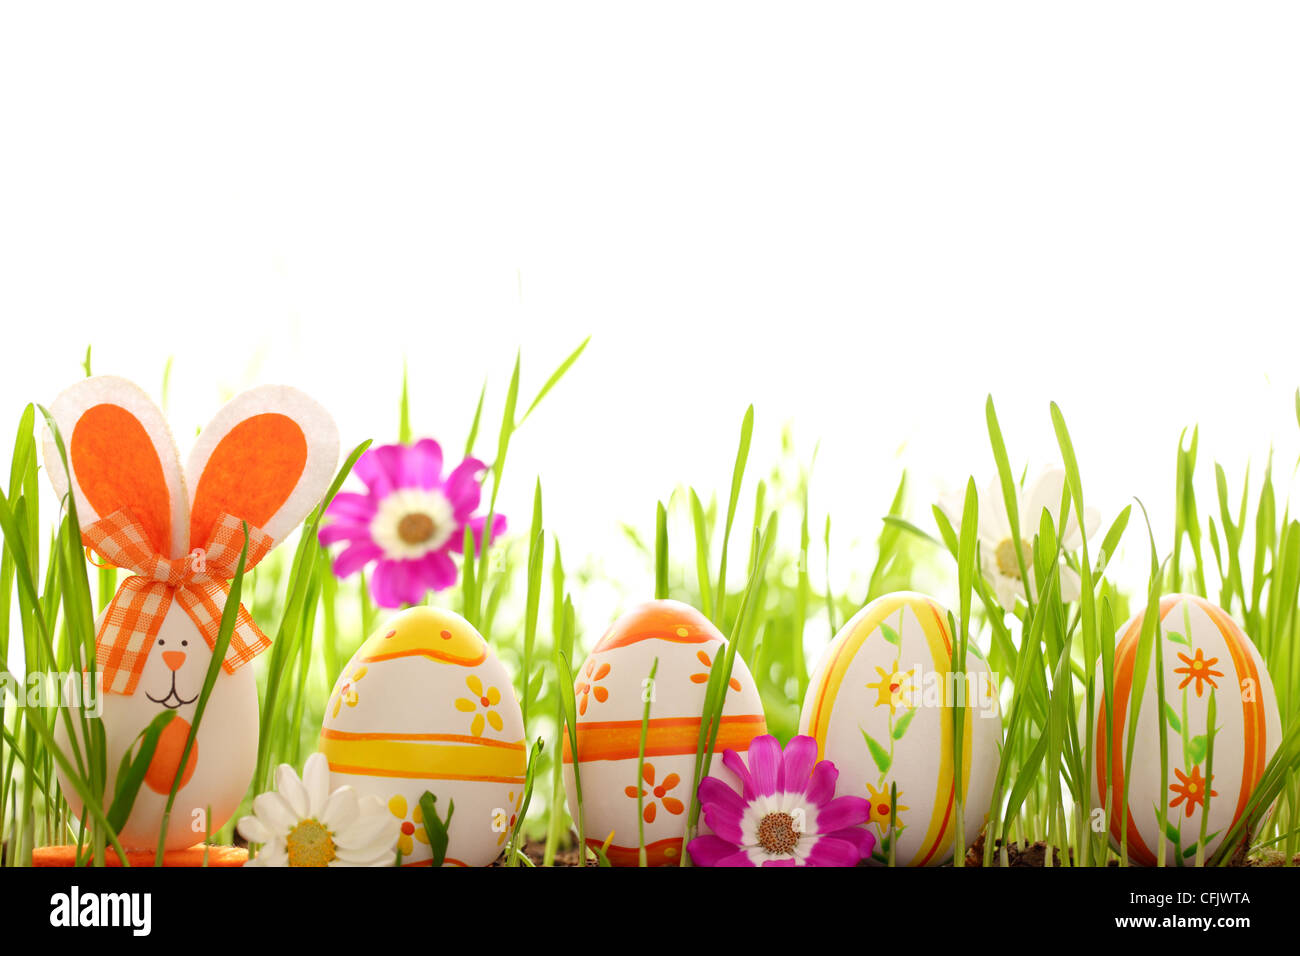 Los huevos de Pascua con Daisy Flor de hierba verde fresca Foto de stock